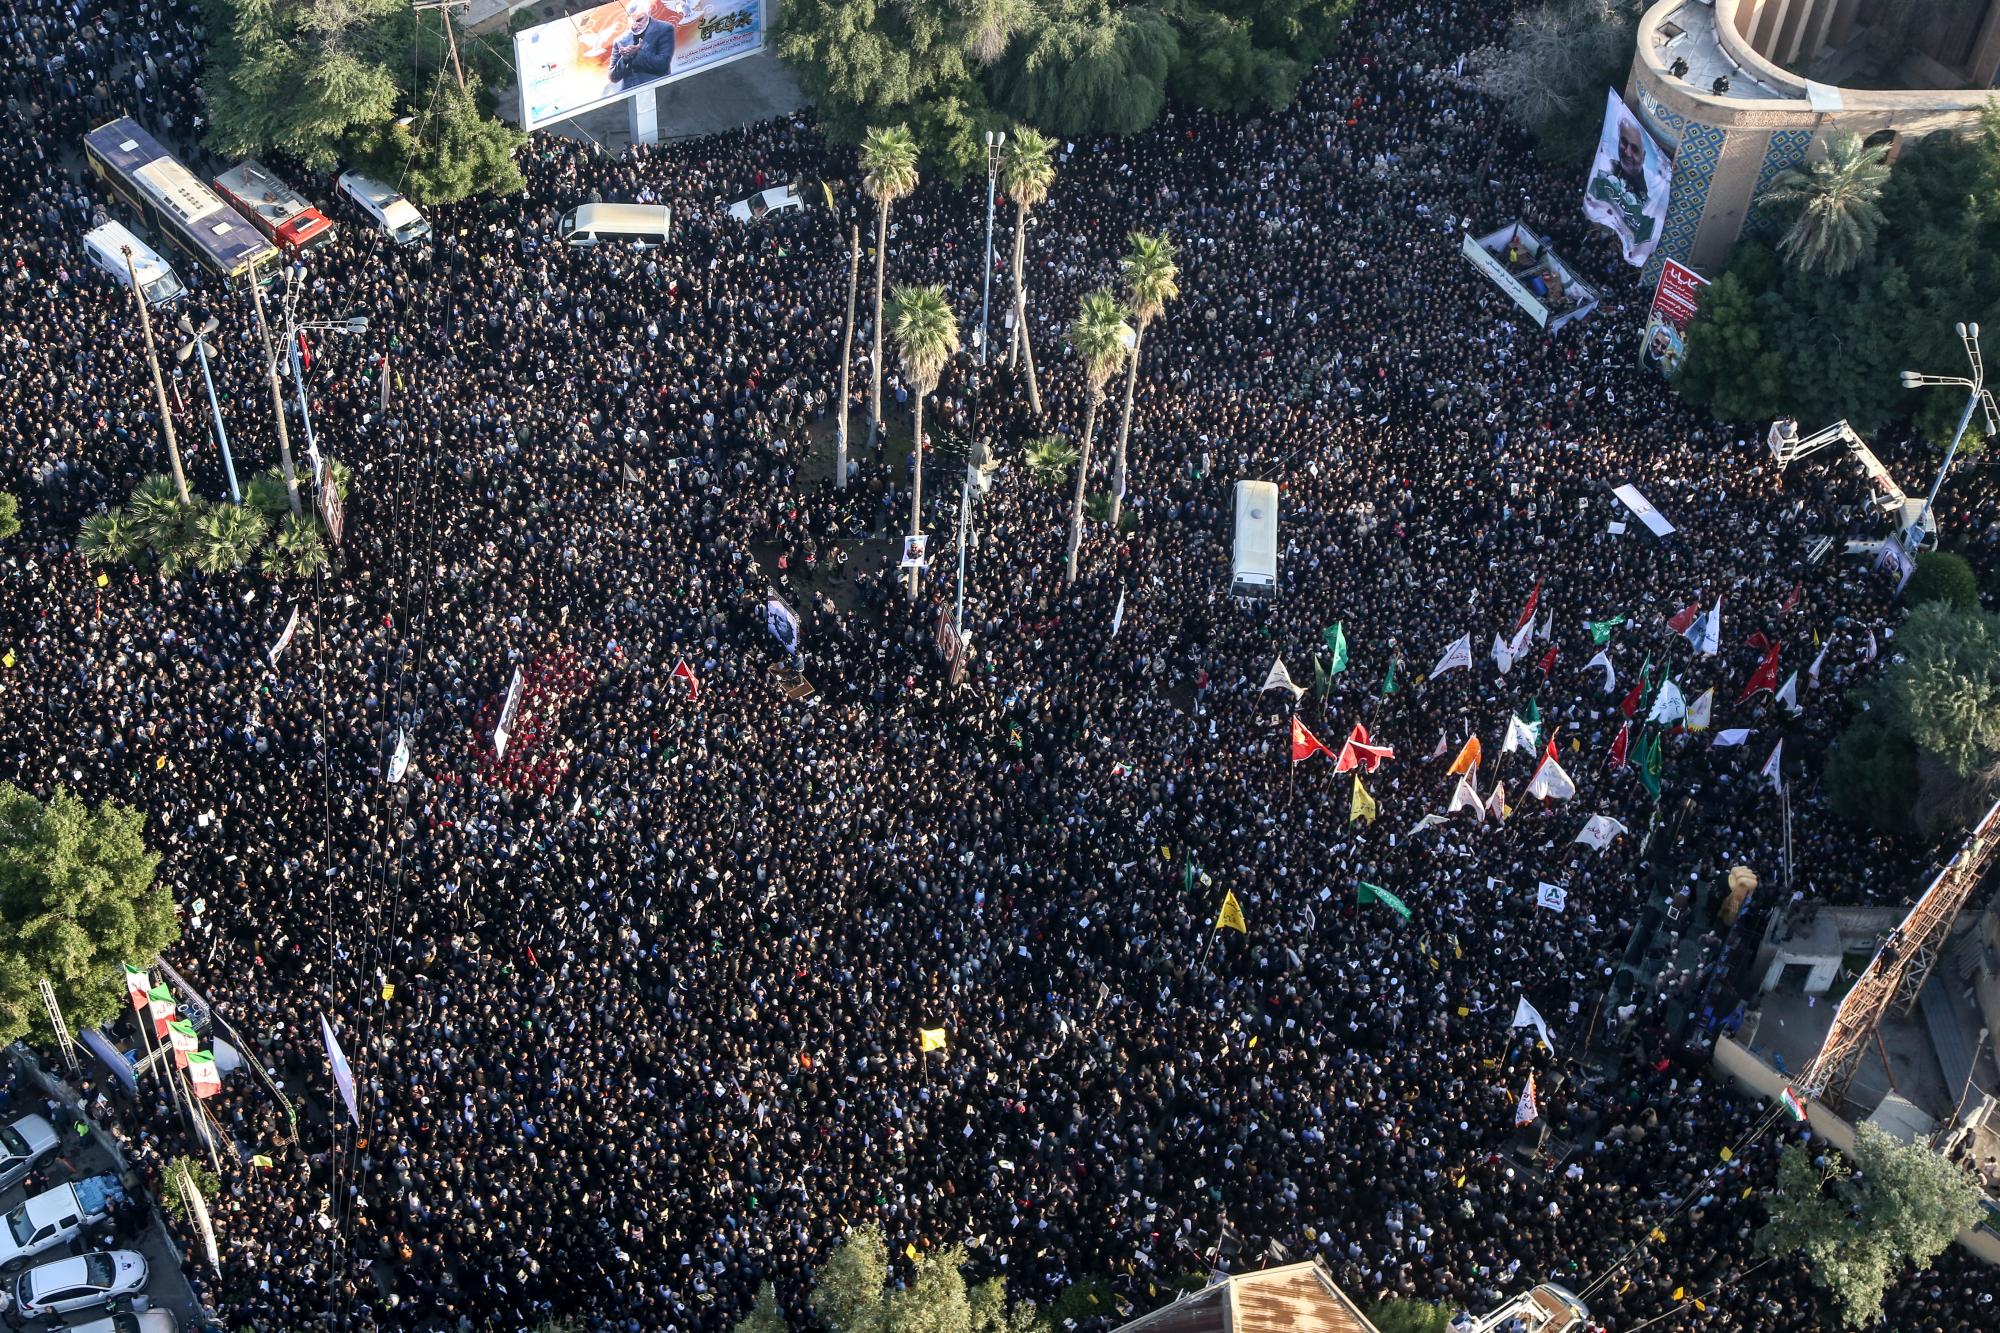 Una multitud asiste a una ceremonia fúnebre en honor del general Qassem Soleimani y sus compañeros muertos en un ataque estadounidense con dron en Irak, en Ahvaz, en el suroccidente de Irán, el domingo 5 de enero de 2020. (Morteza Jaberian / Mehr News Agency) vía AP)